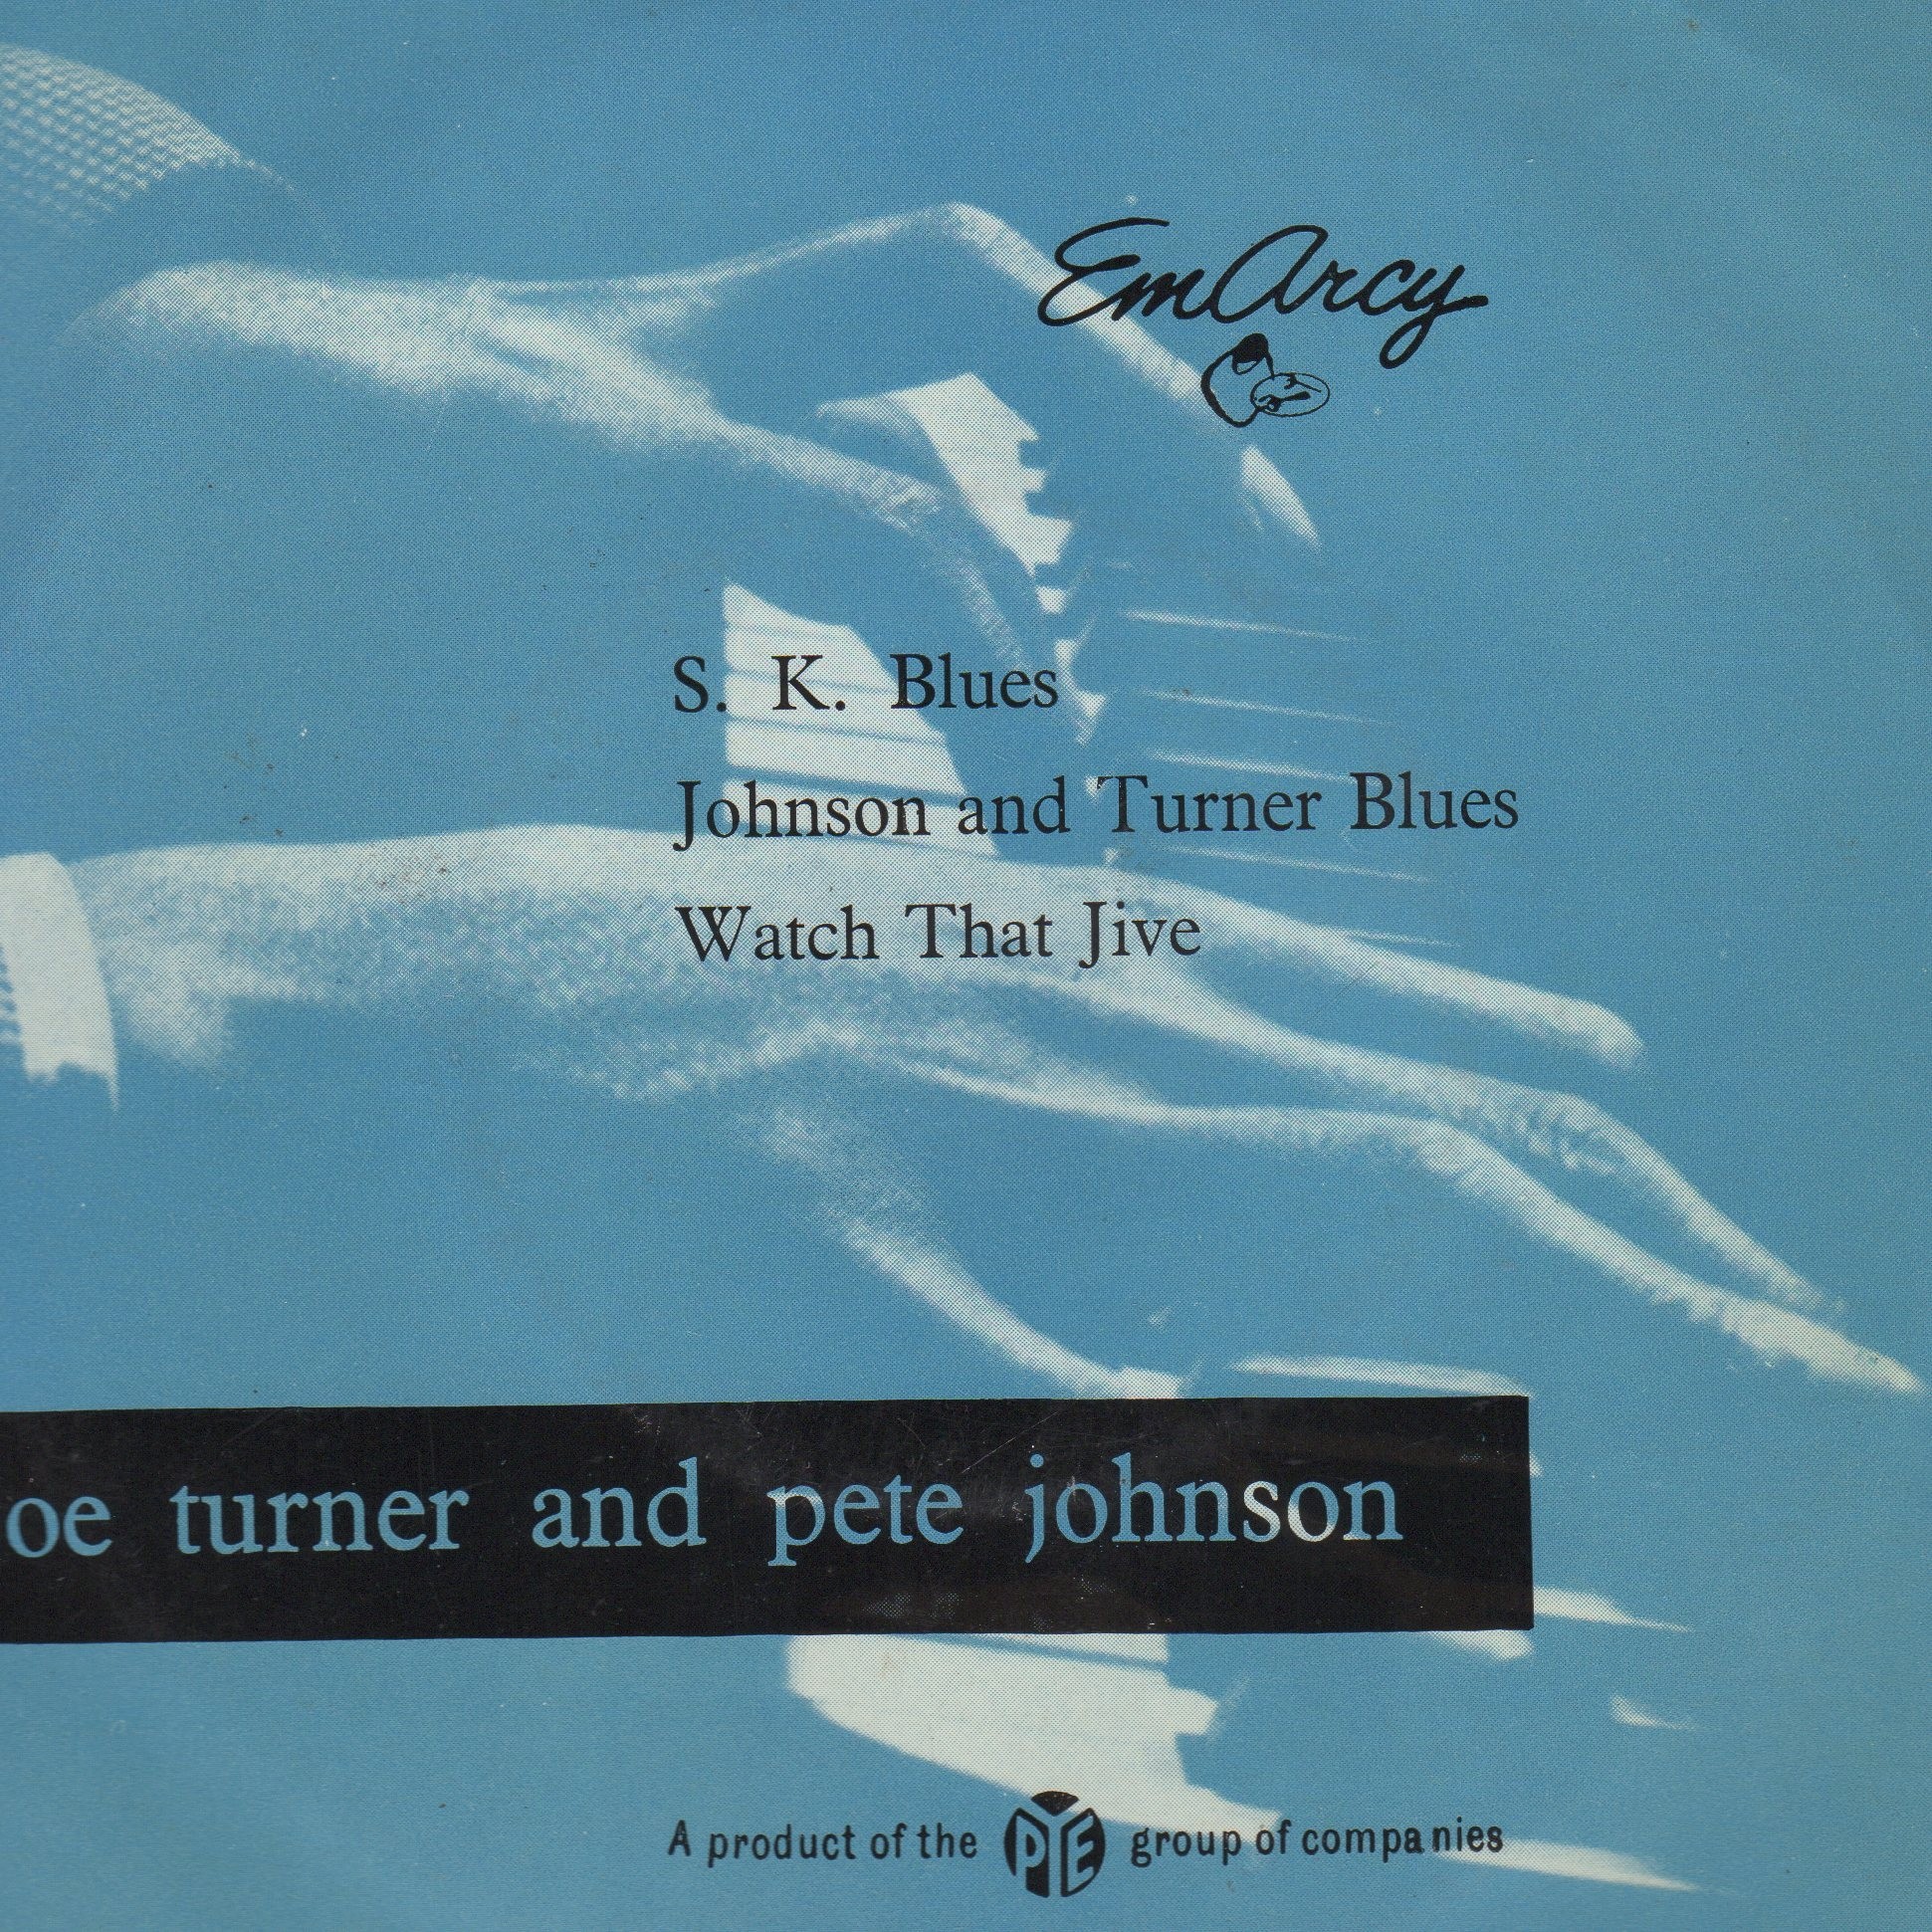 Joe Turner & Pete Johnson EP